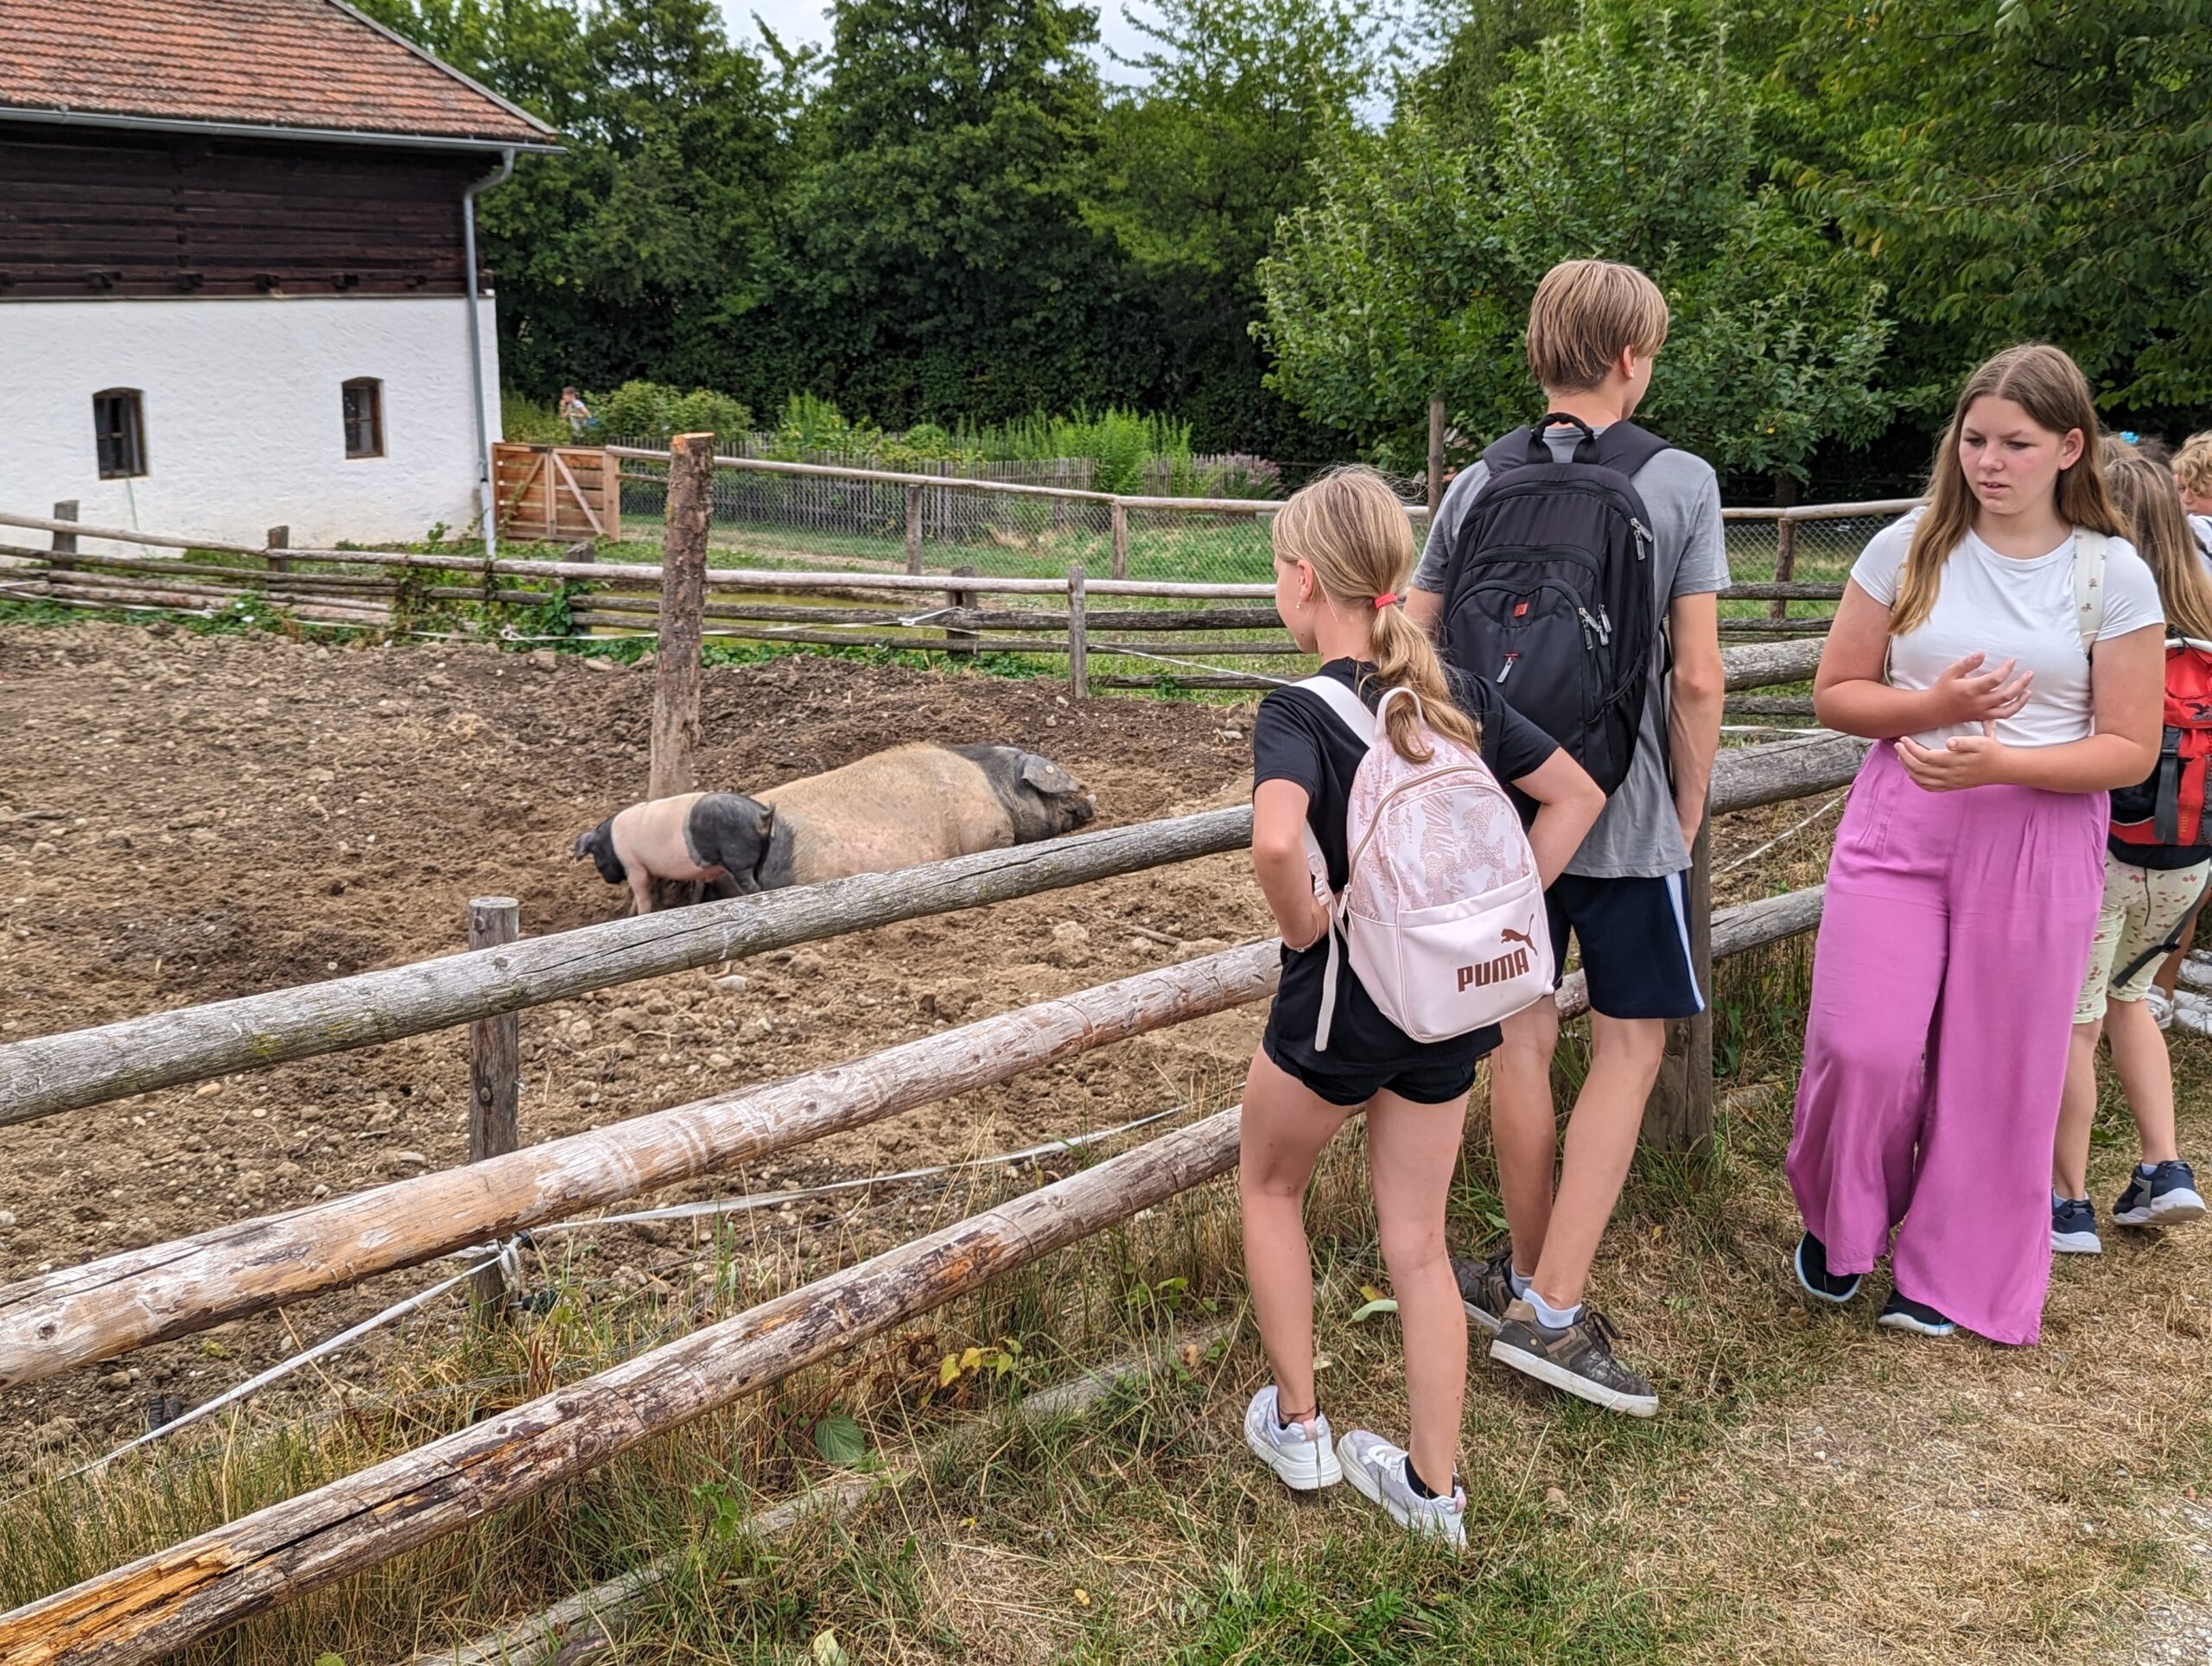 Schweine liegen in der Erde, Schüler stehen an einem Zaun und sehen auf die Schweine